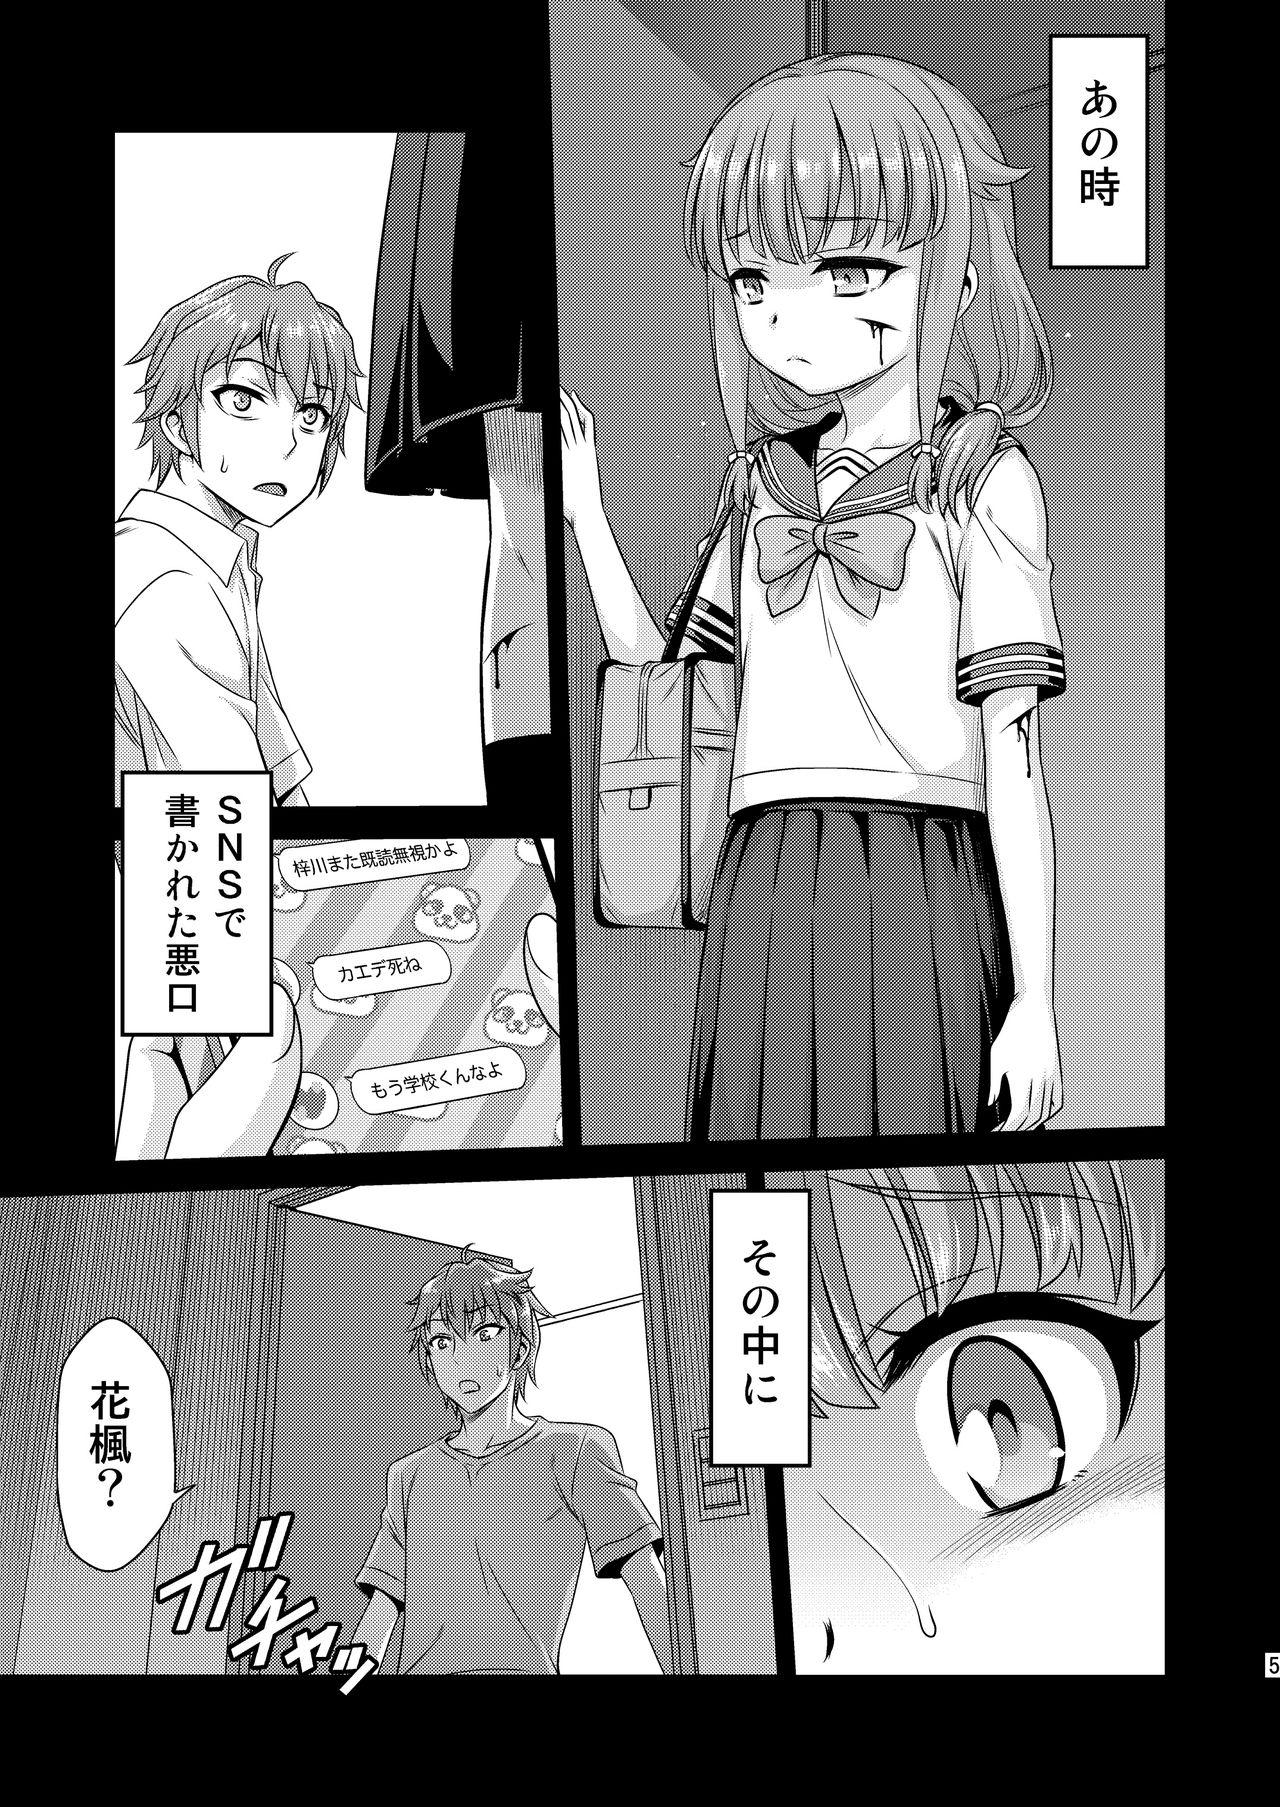 Fitness Kaede Shoukougun!! - Seishun buta yarou wa bunny girl senpai no yume o minai 8teenxxx - Page 5